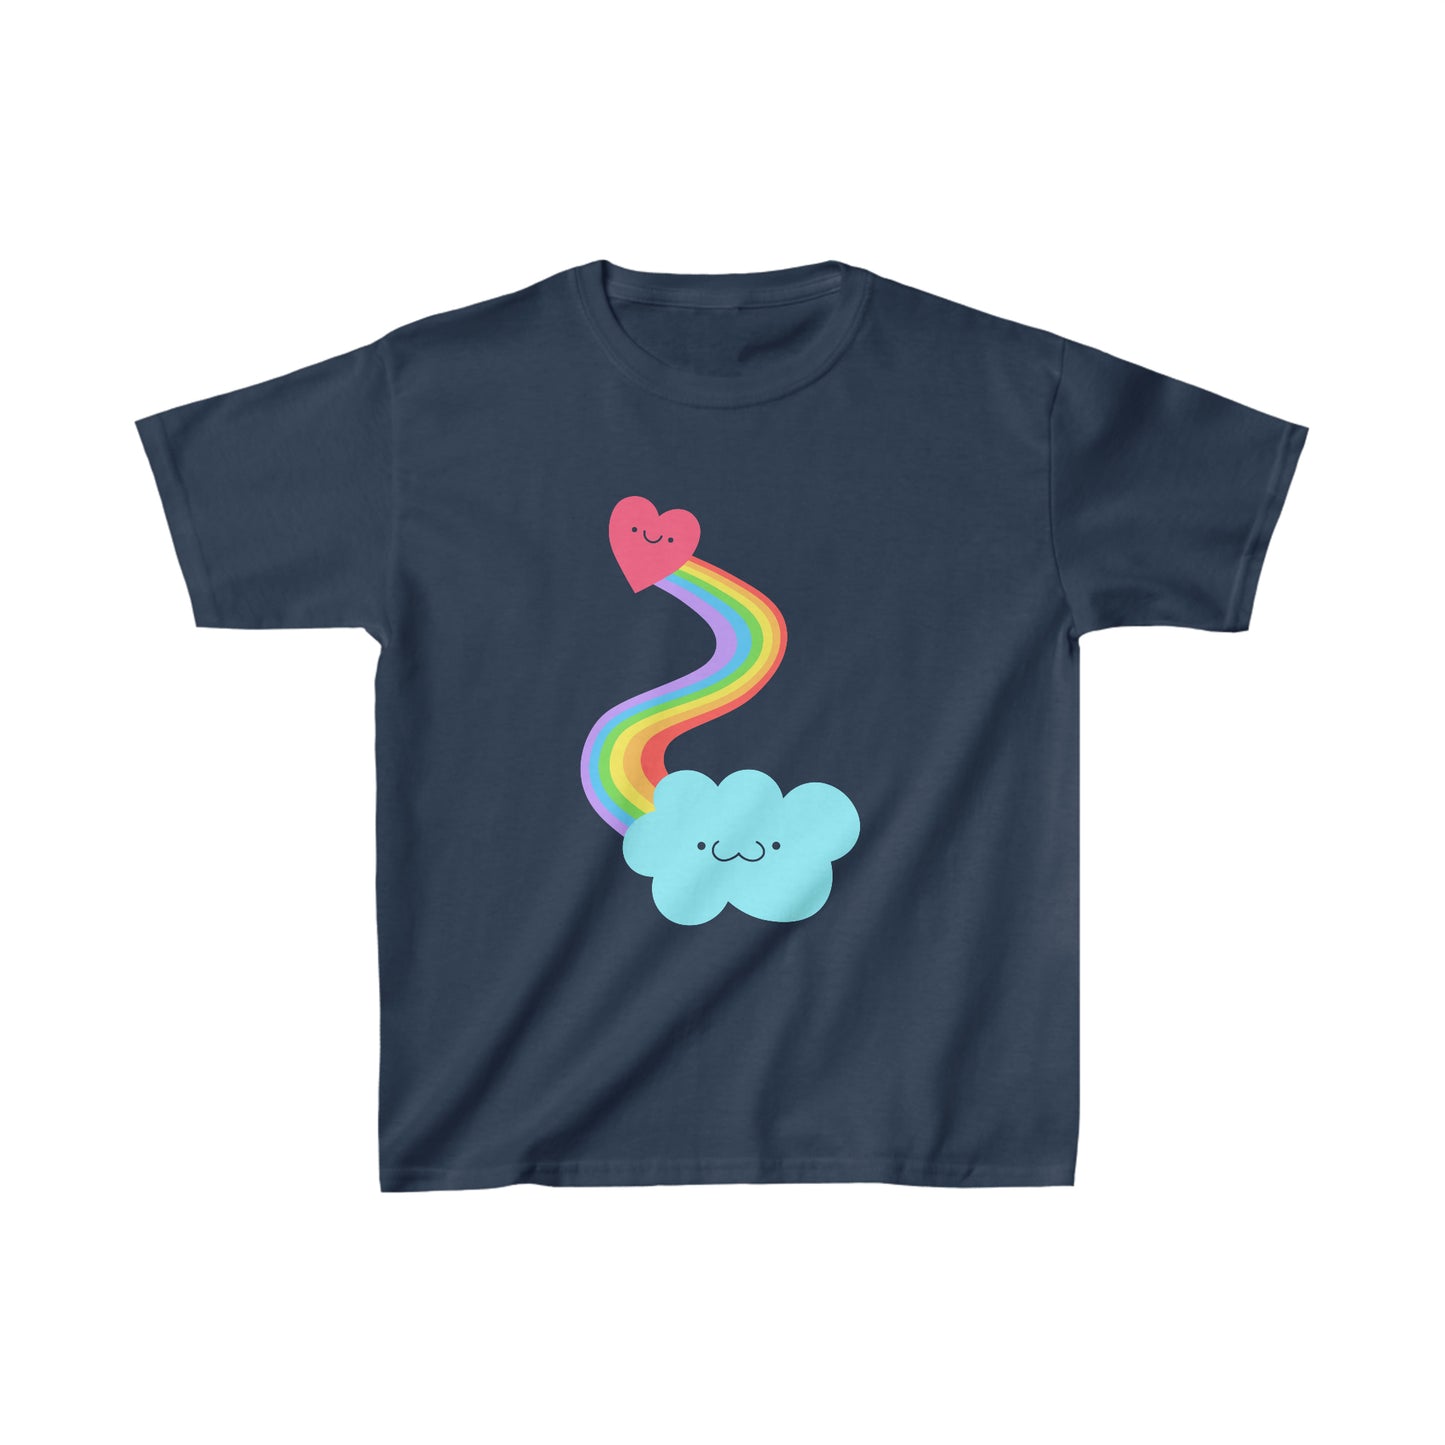 Heart + Rainbow + Cloud T-shirt Kids